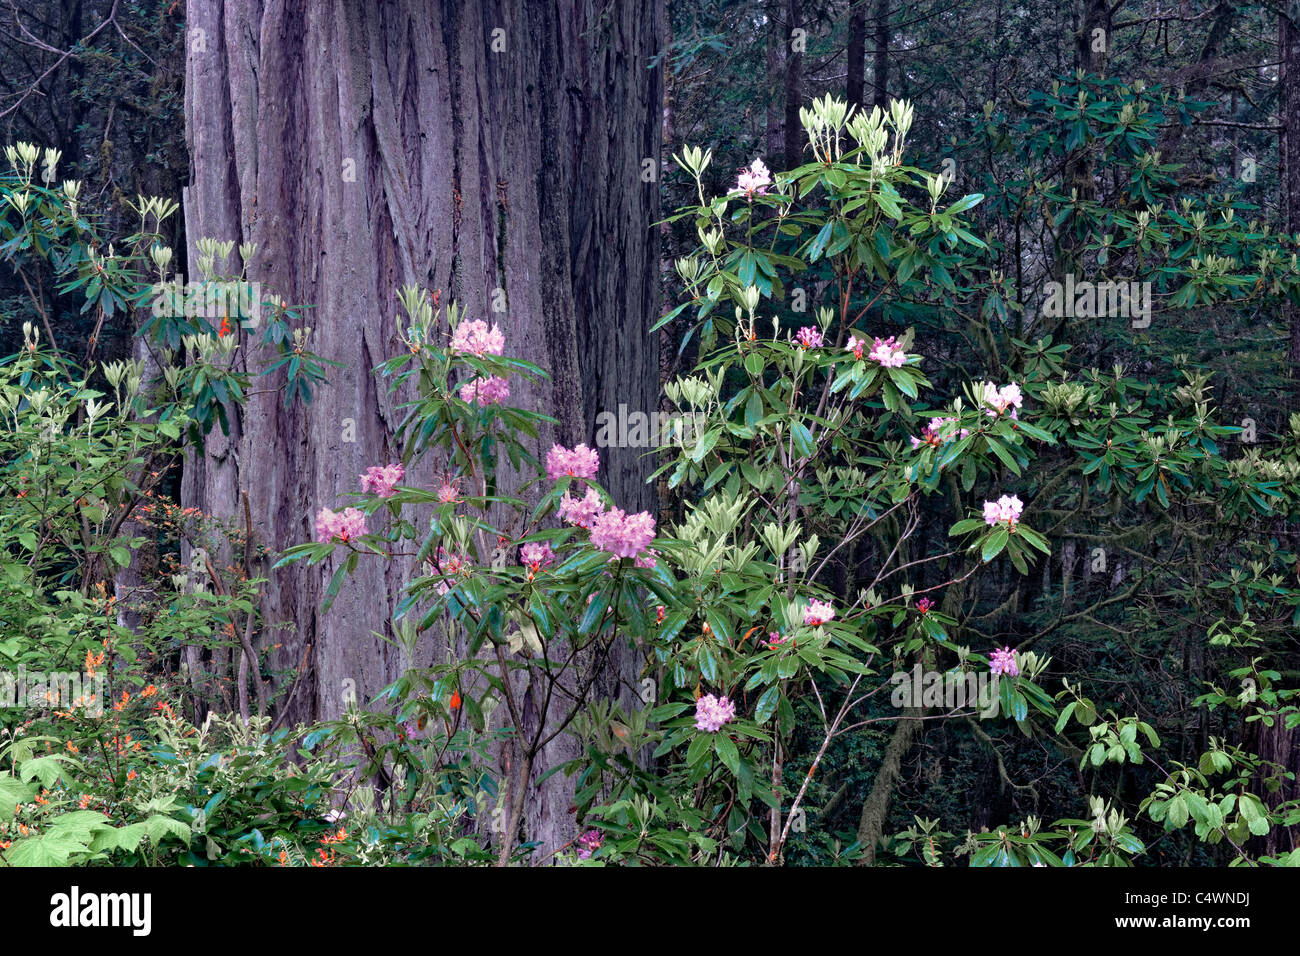 Primavera fioriscono rododendri tra gli alberi di sequoia della California del Norte Coast Redwoods Stato e parchi nazionali. Foto Stock